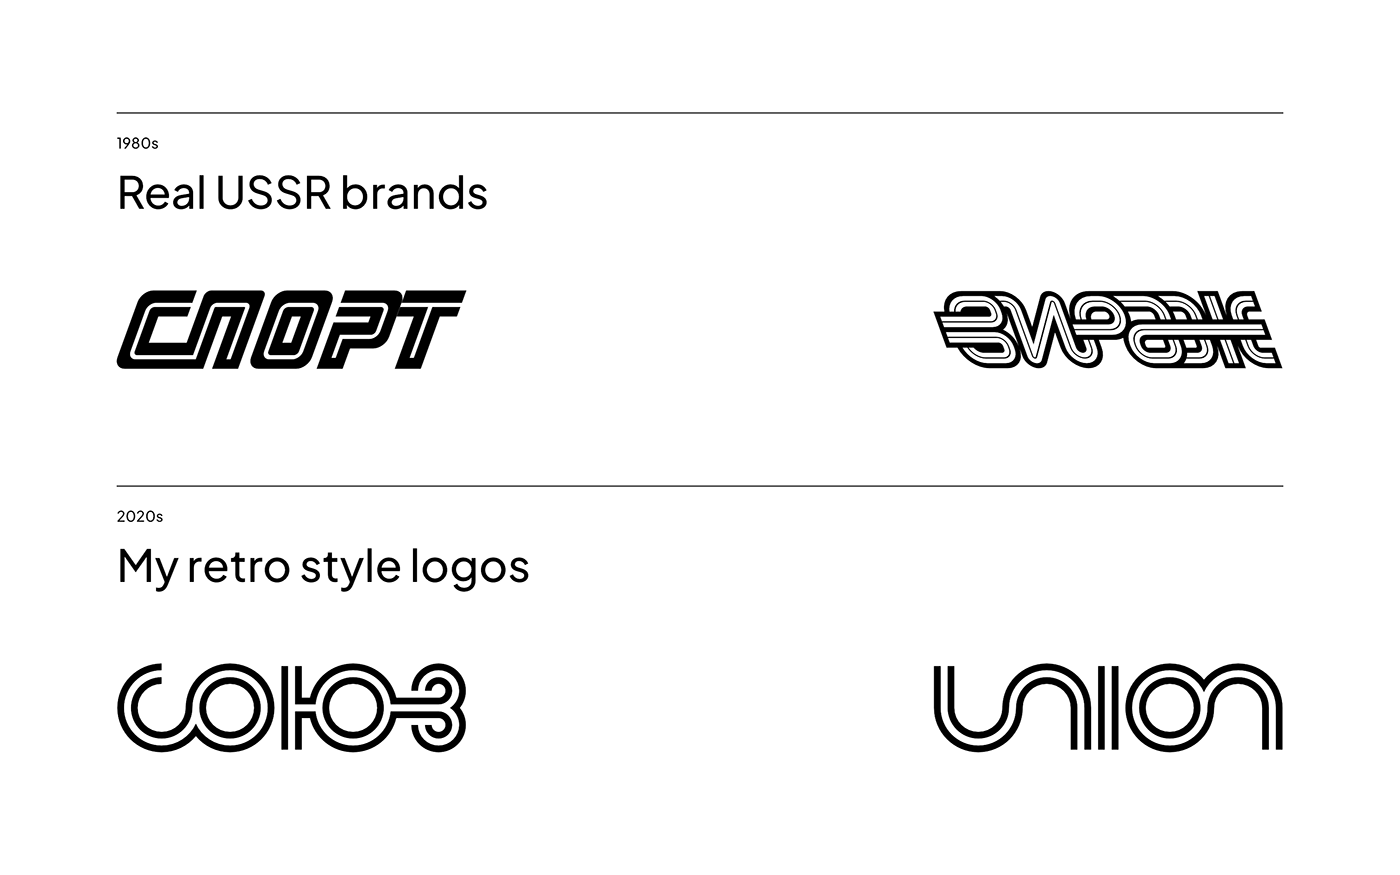 4 logos